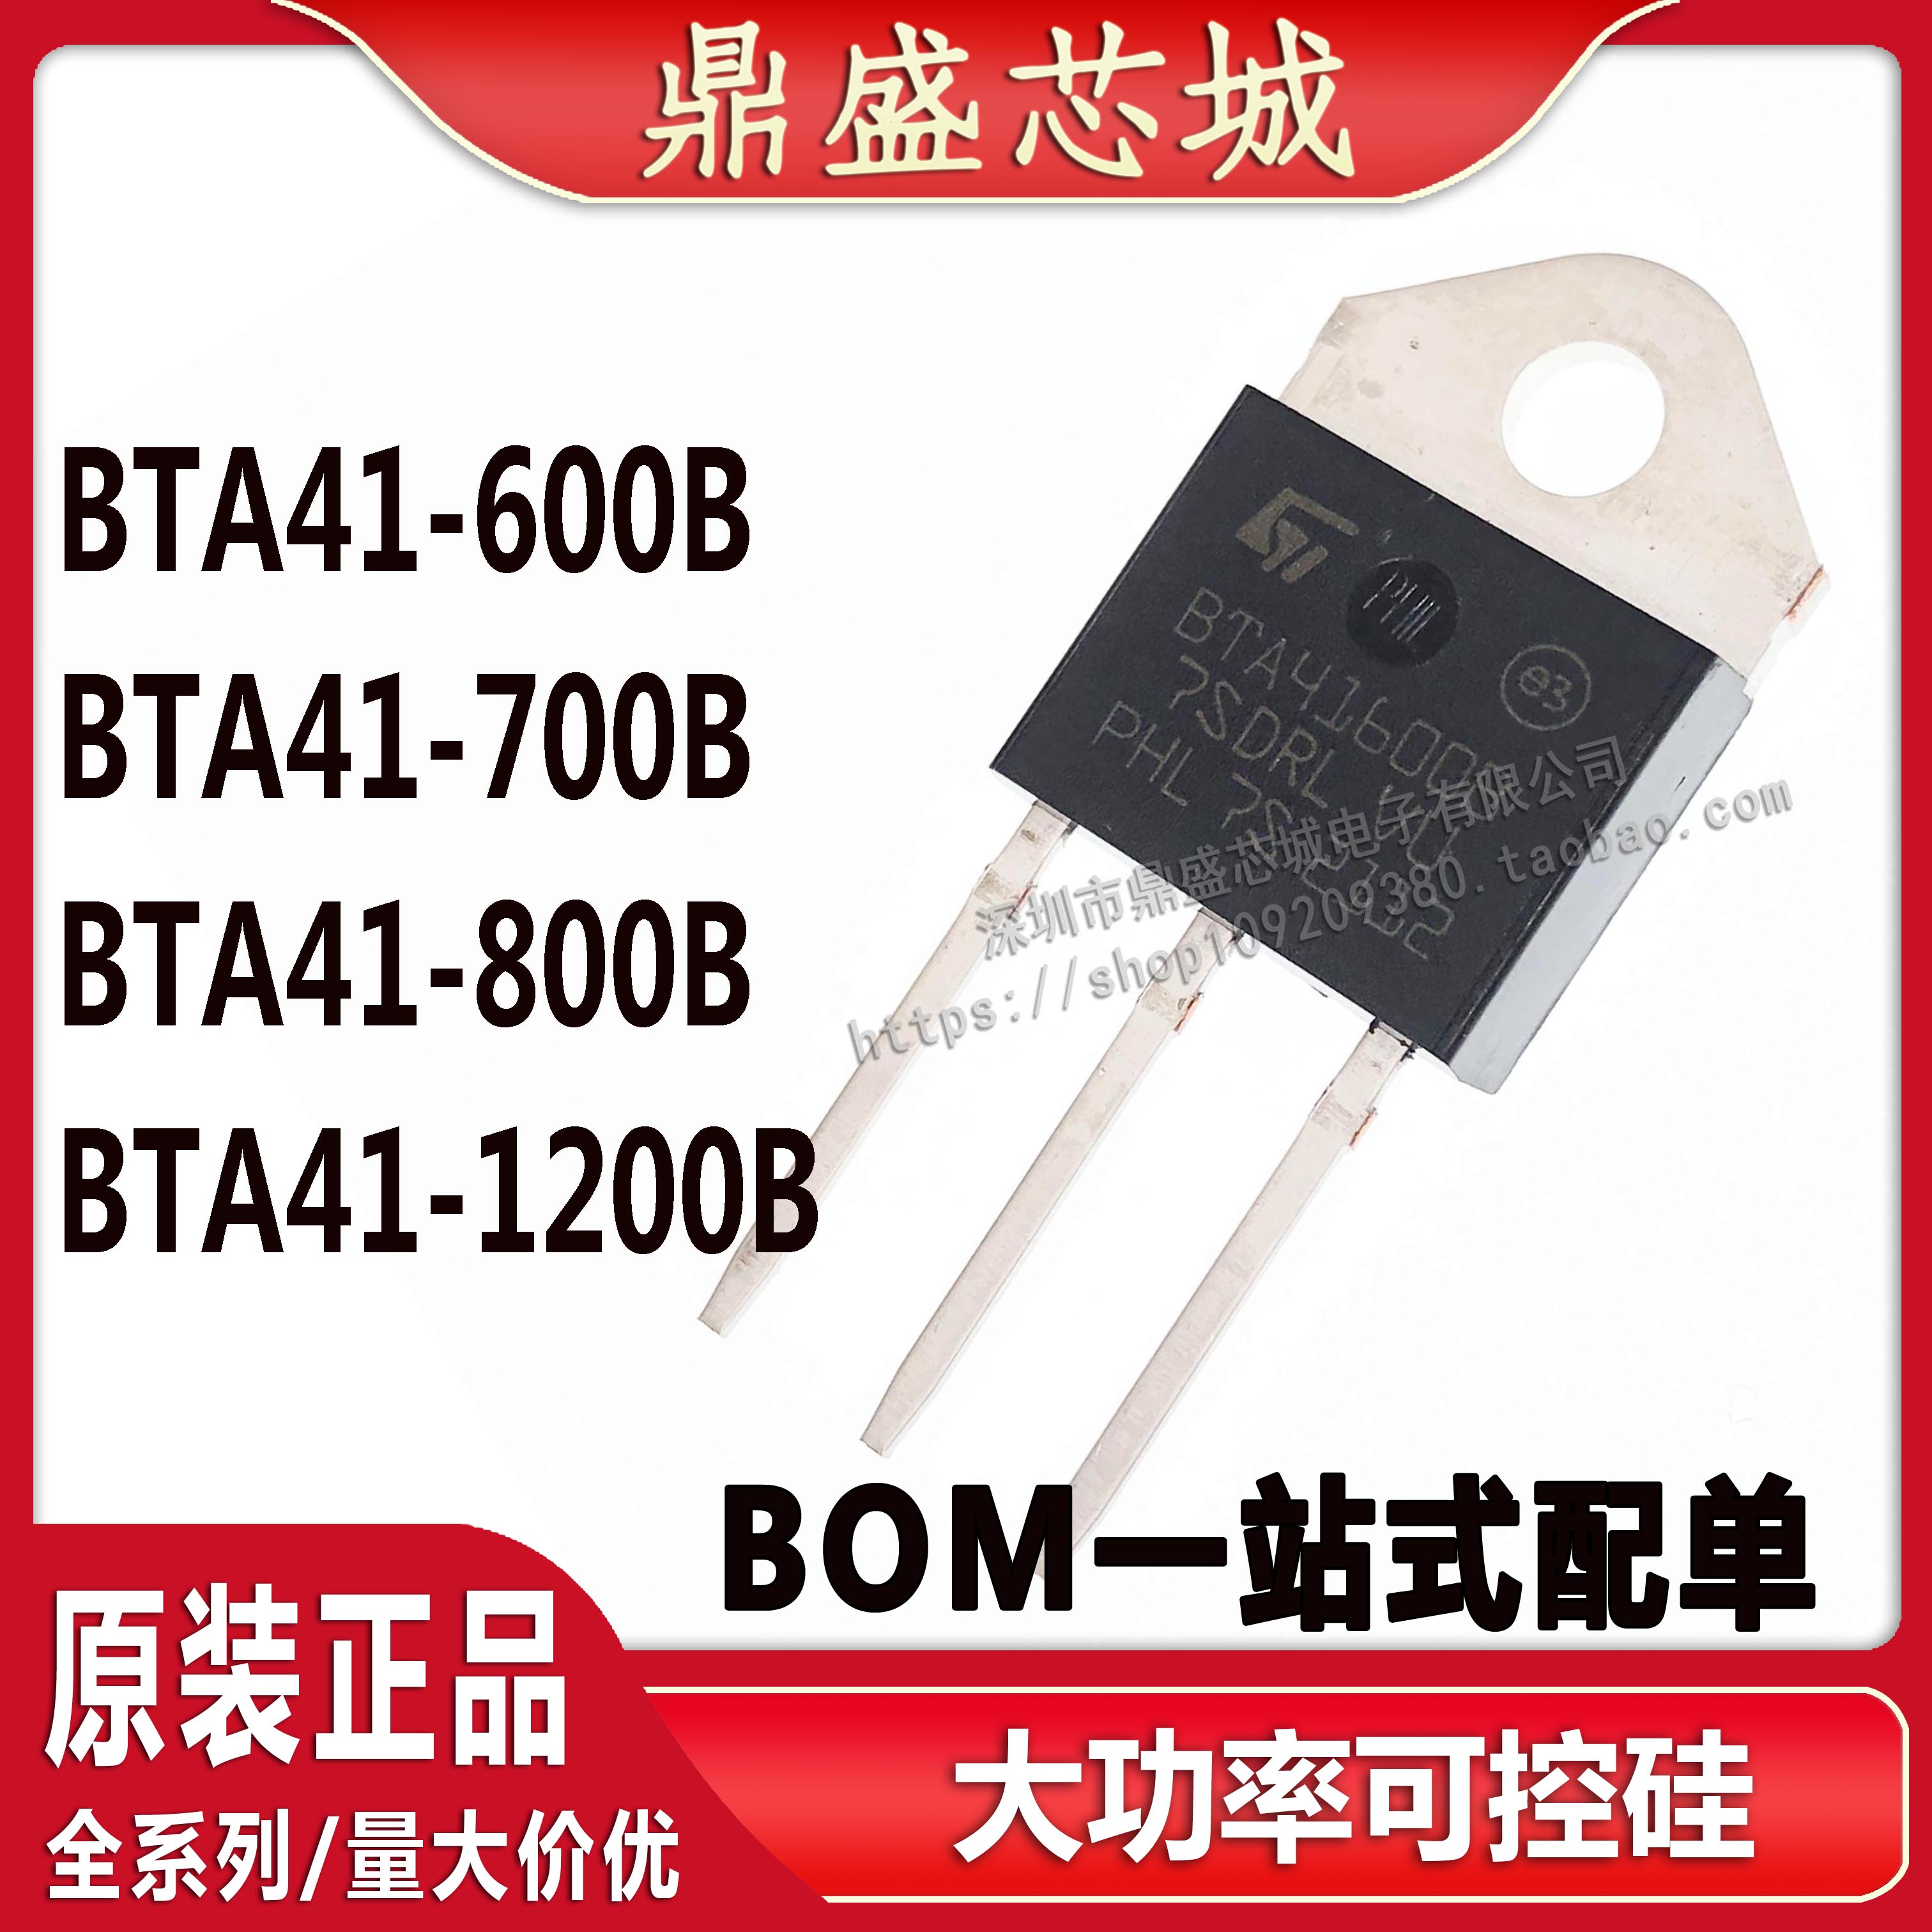 全新国产大芯片BTA41-600B 700B 800B 1200B 双向可控硅 品质保证